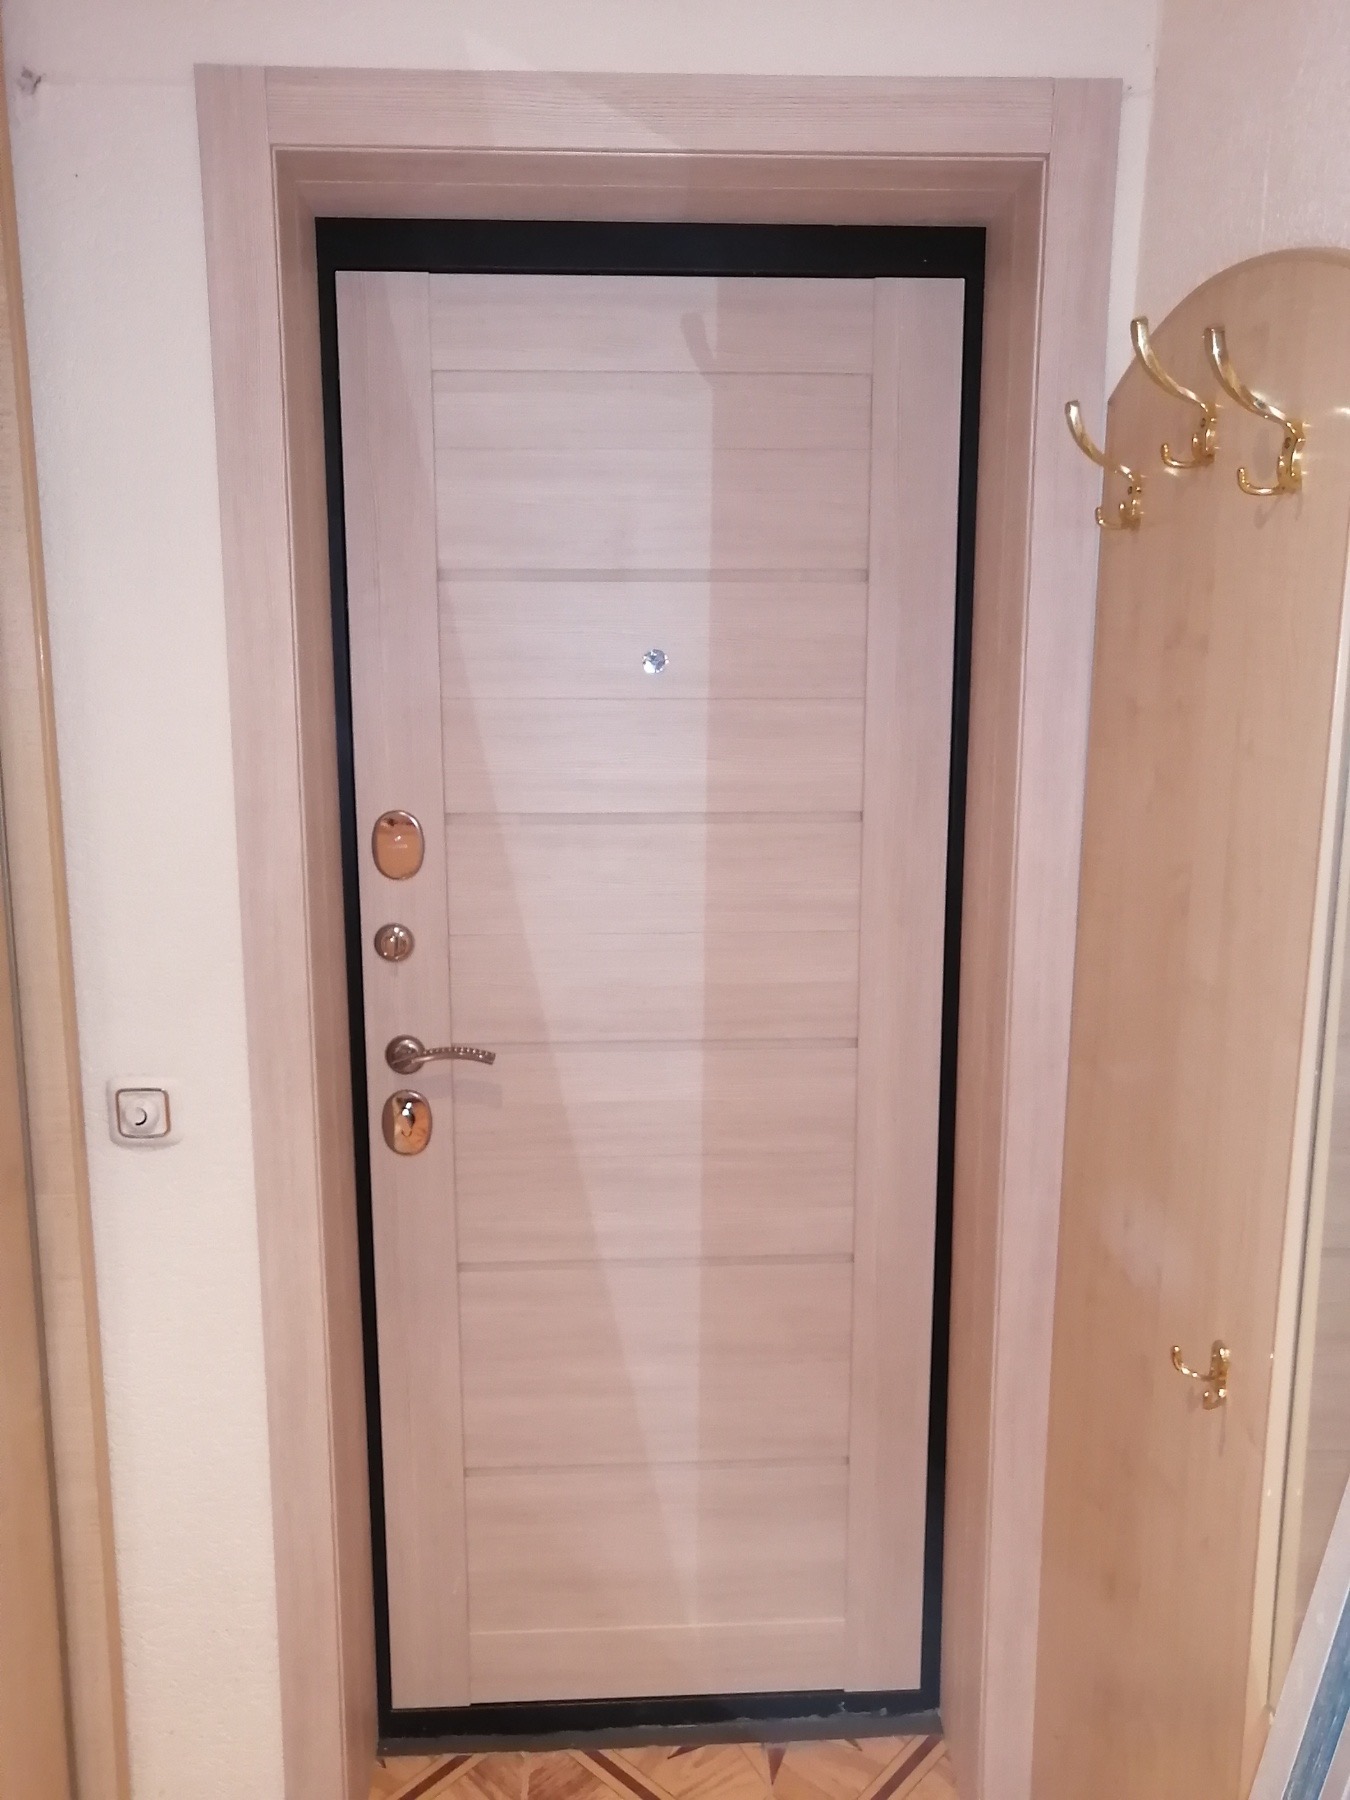 Входные двери для квартир и домов❗️с внутренней панелью межкомнатной двери+ отделка проема? Производитель Эльпорта (РФ). Производитель Эльпорта (РФ)